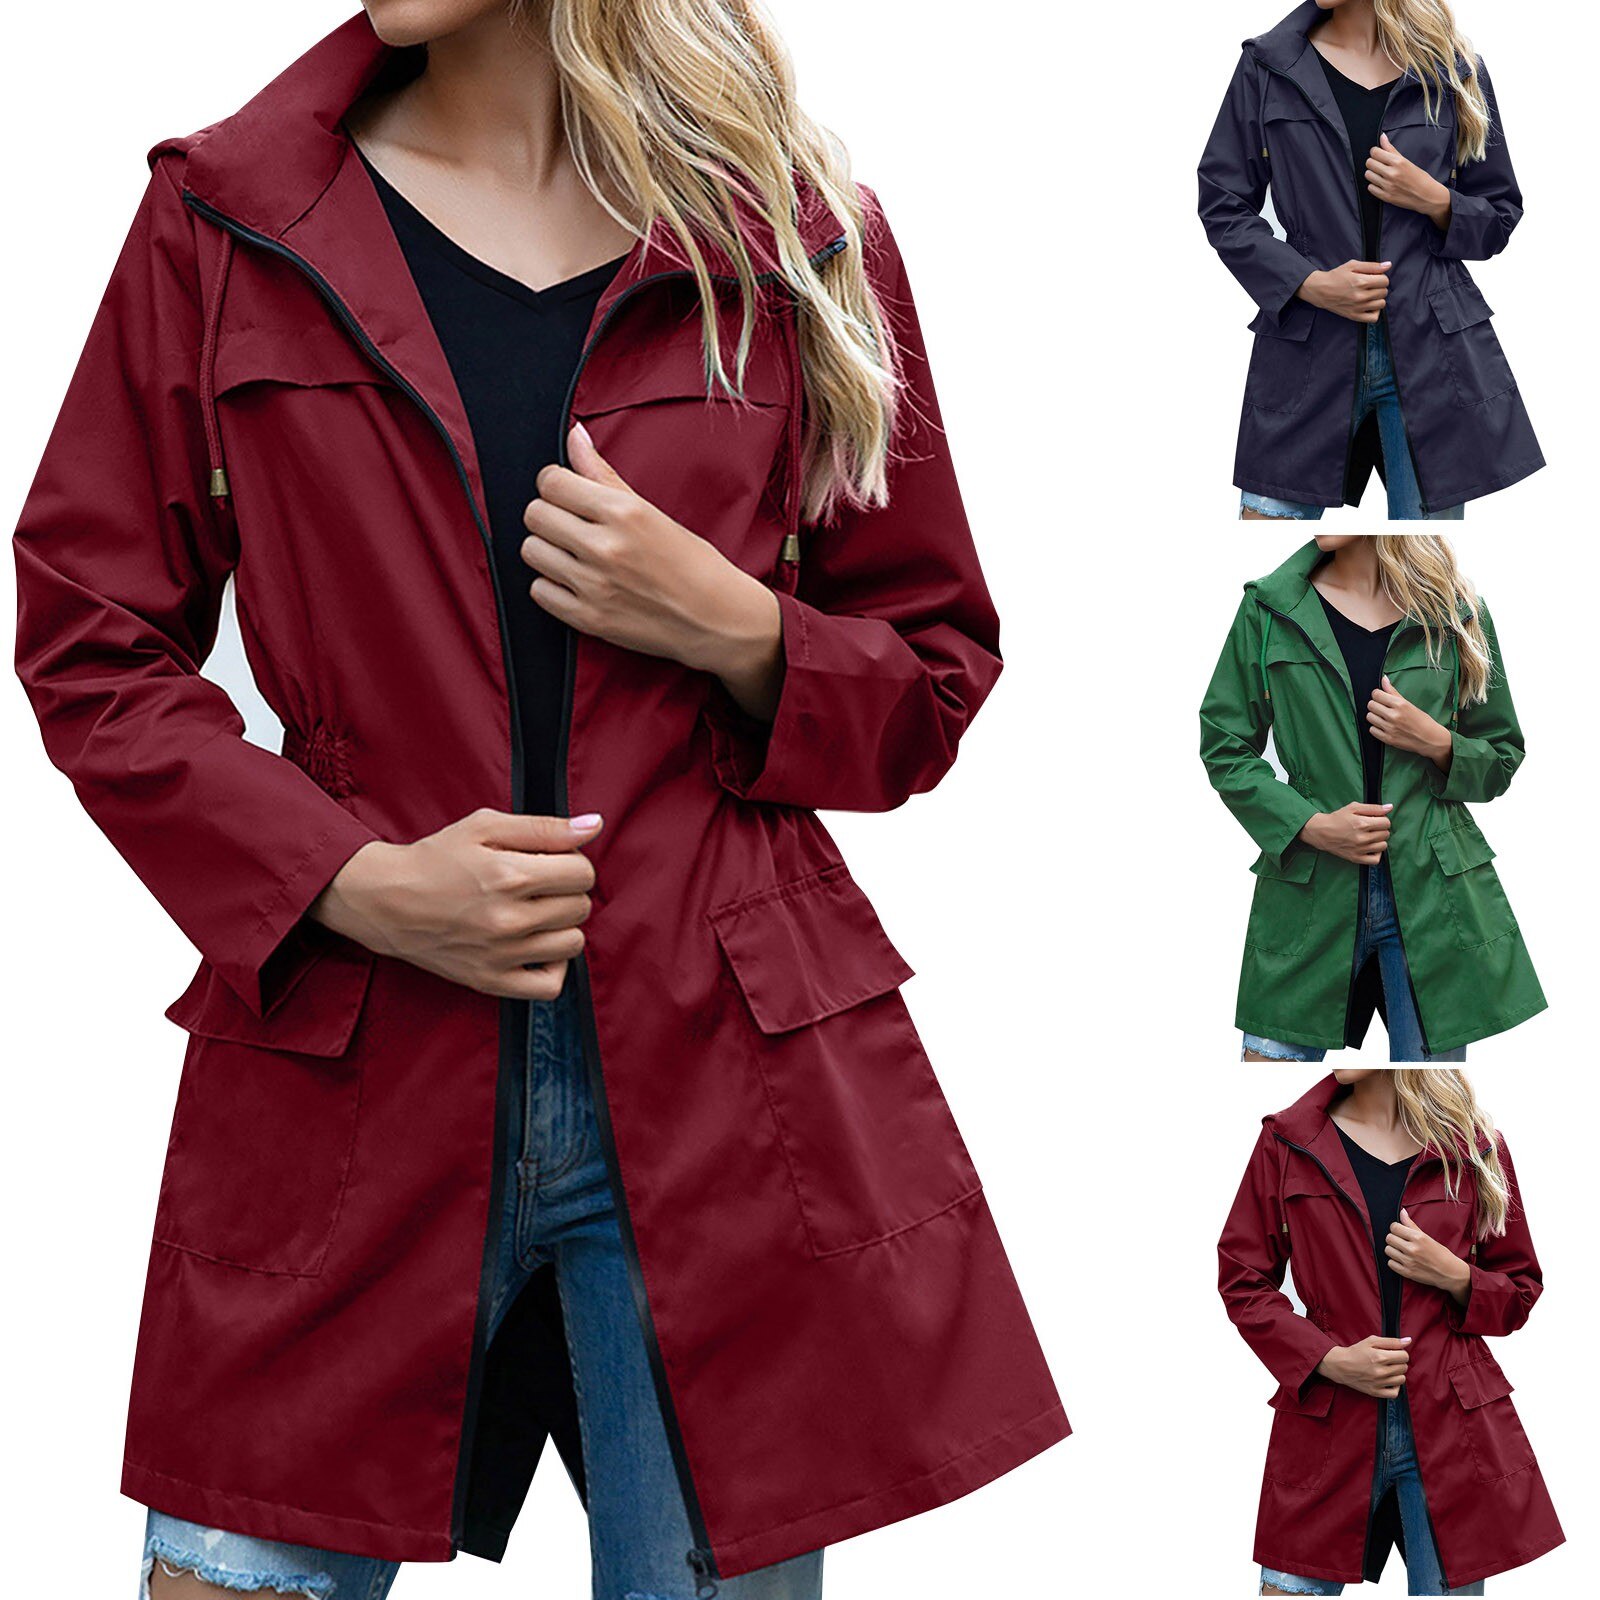 Windbreaker Coat Women Rain Jacket Outdoor Waterproof Hooded Raincoat Spring Autumn Outdoor Trench Coat Outwear